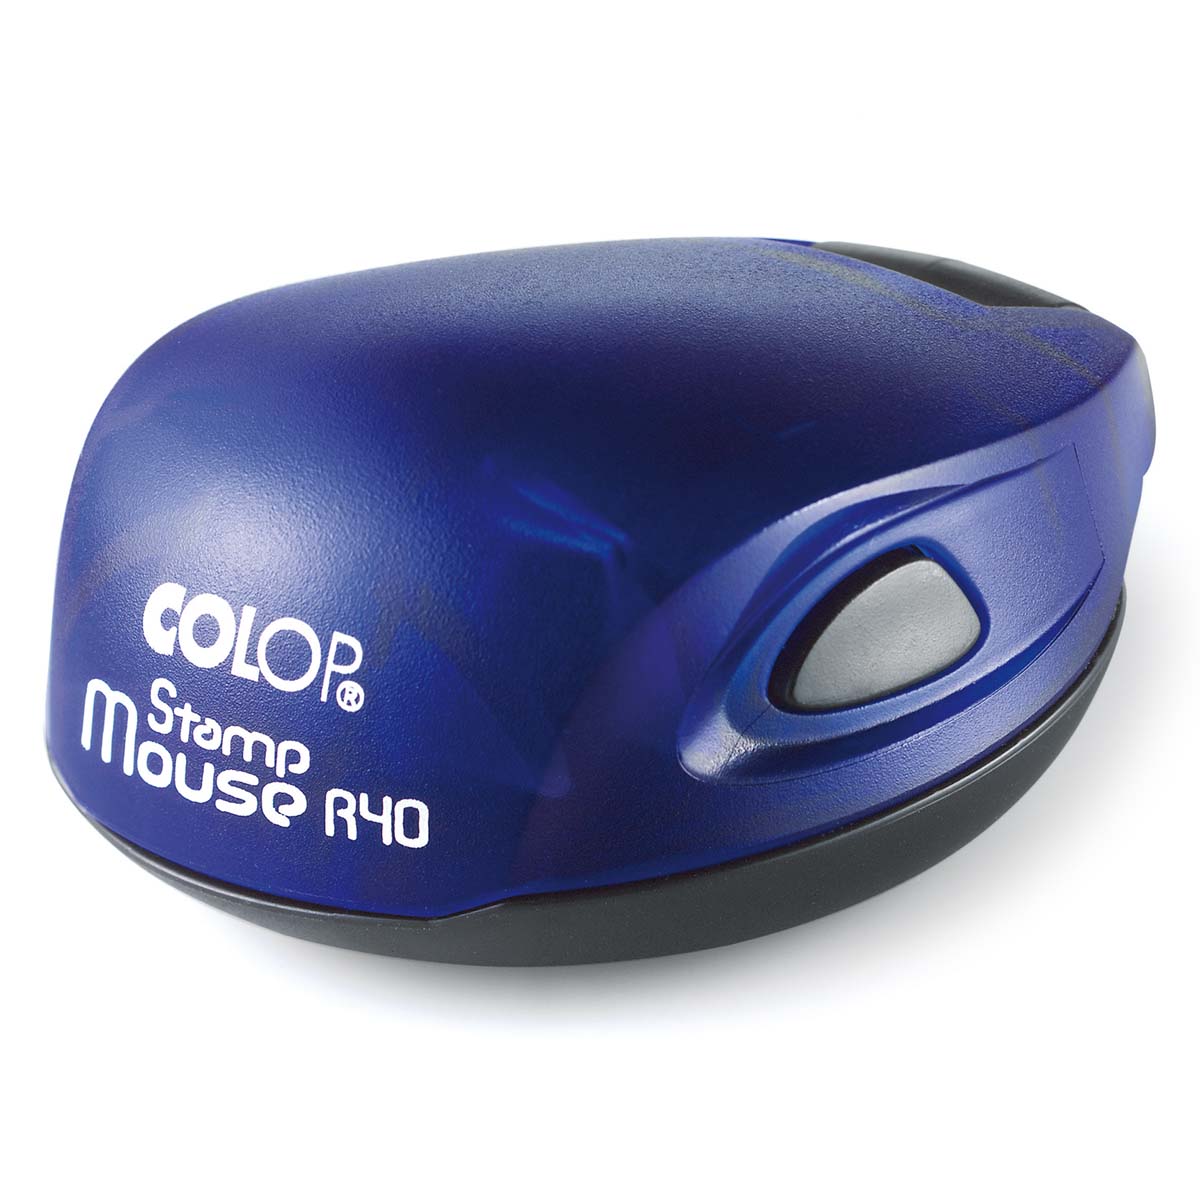 Stamp Mouse R40 montuur indigo